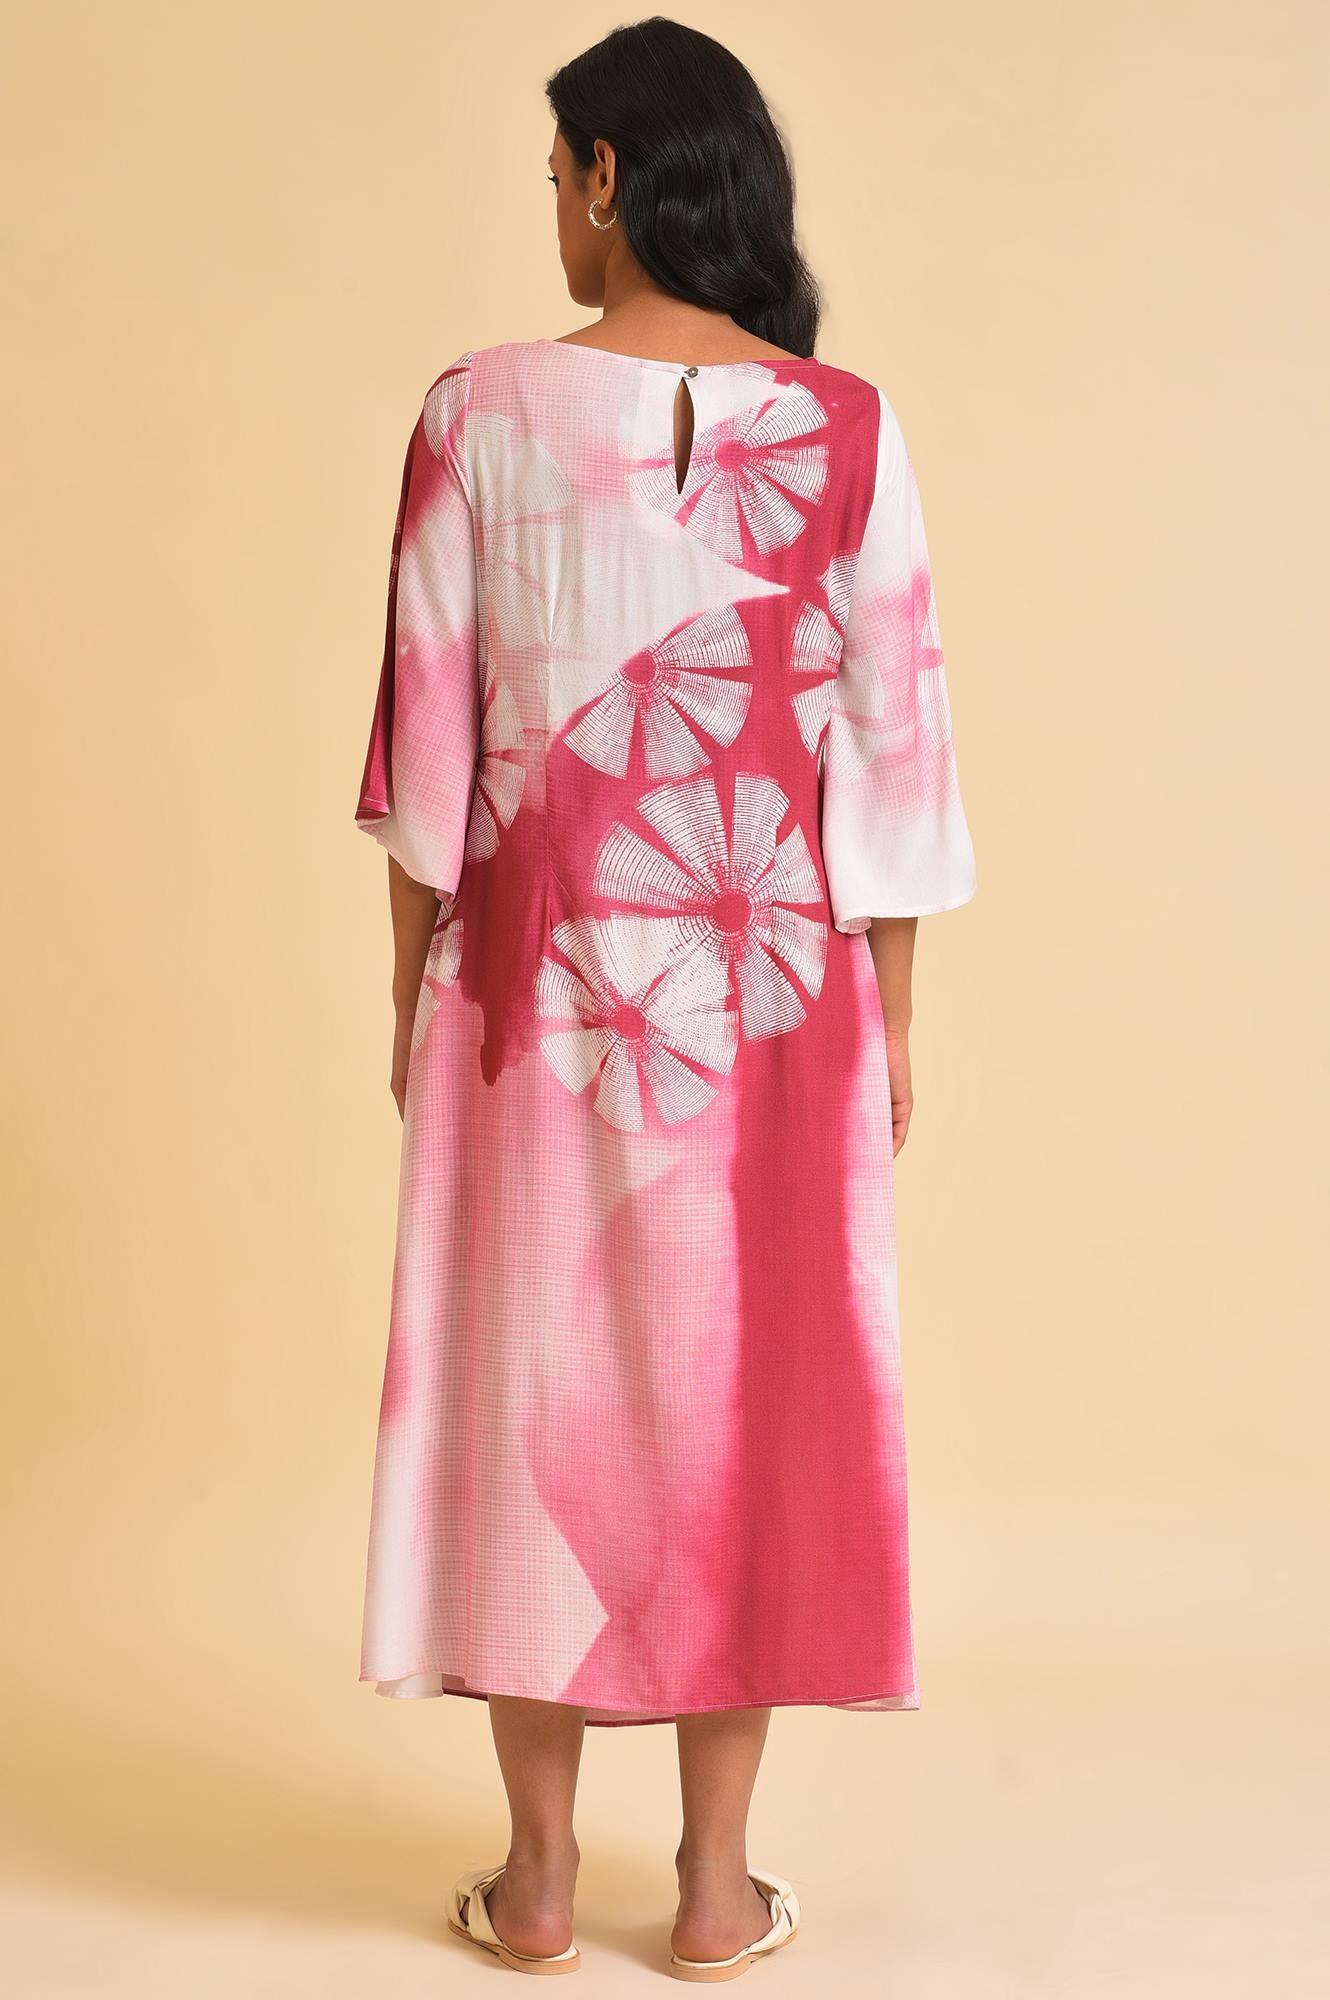 Pink Graphic Print Dress - wforwoman